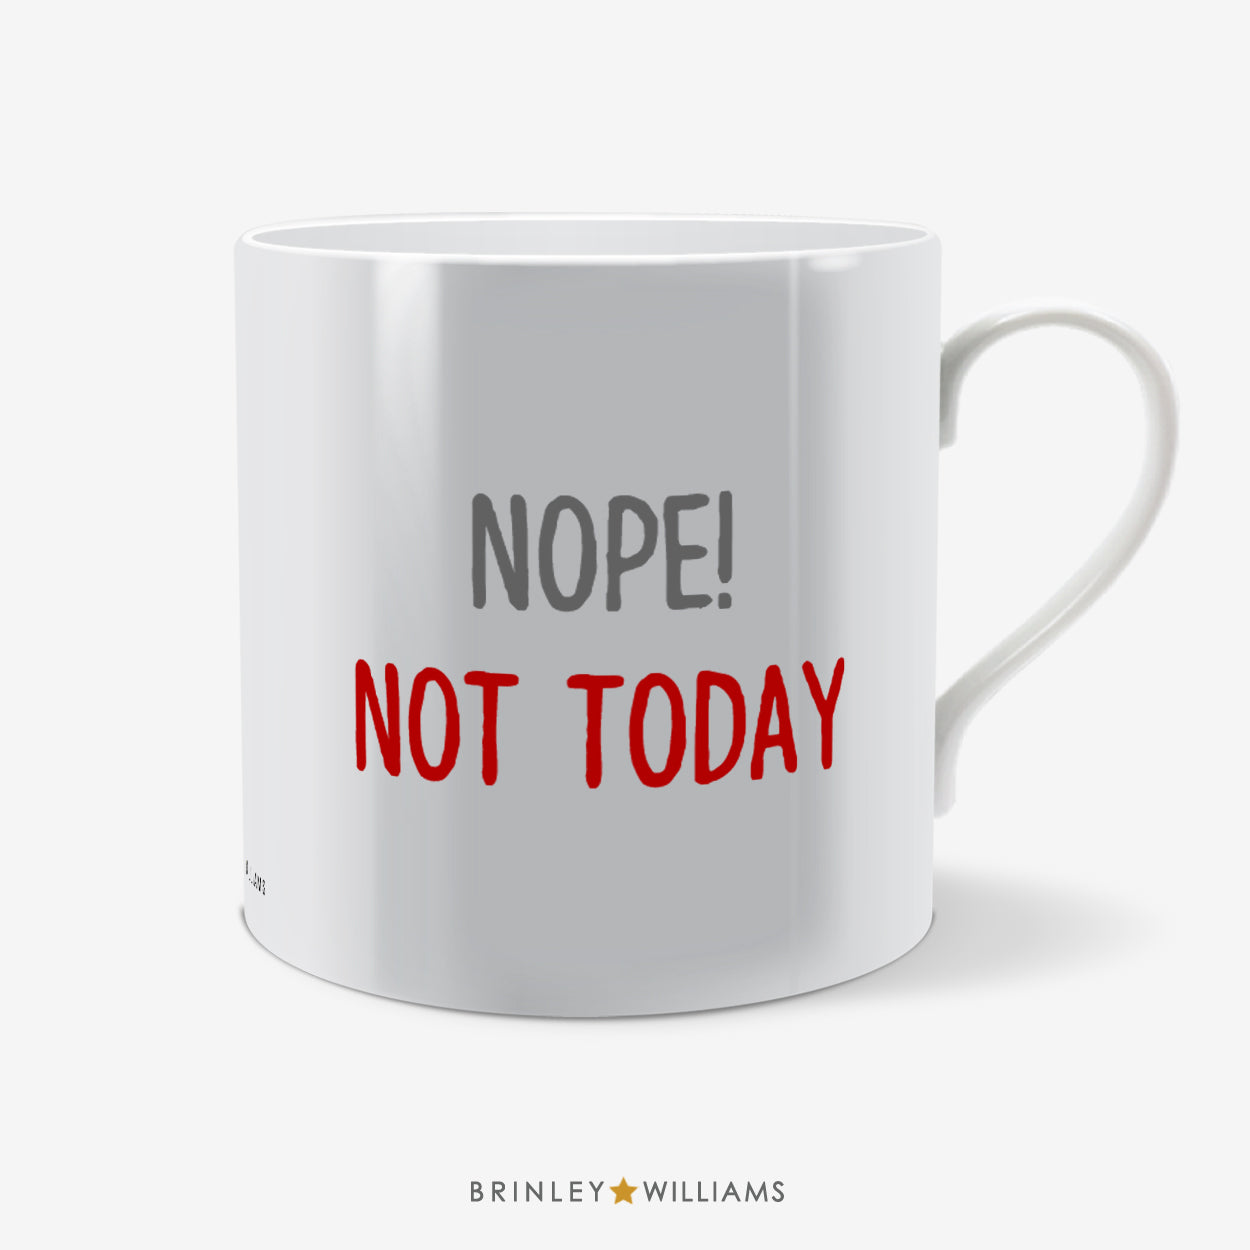 Nope! Not Today Fun Mug - Red